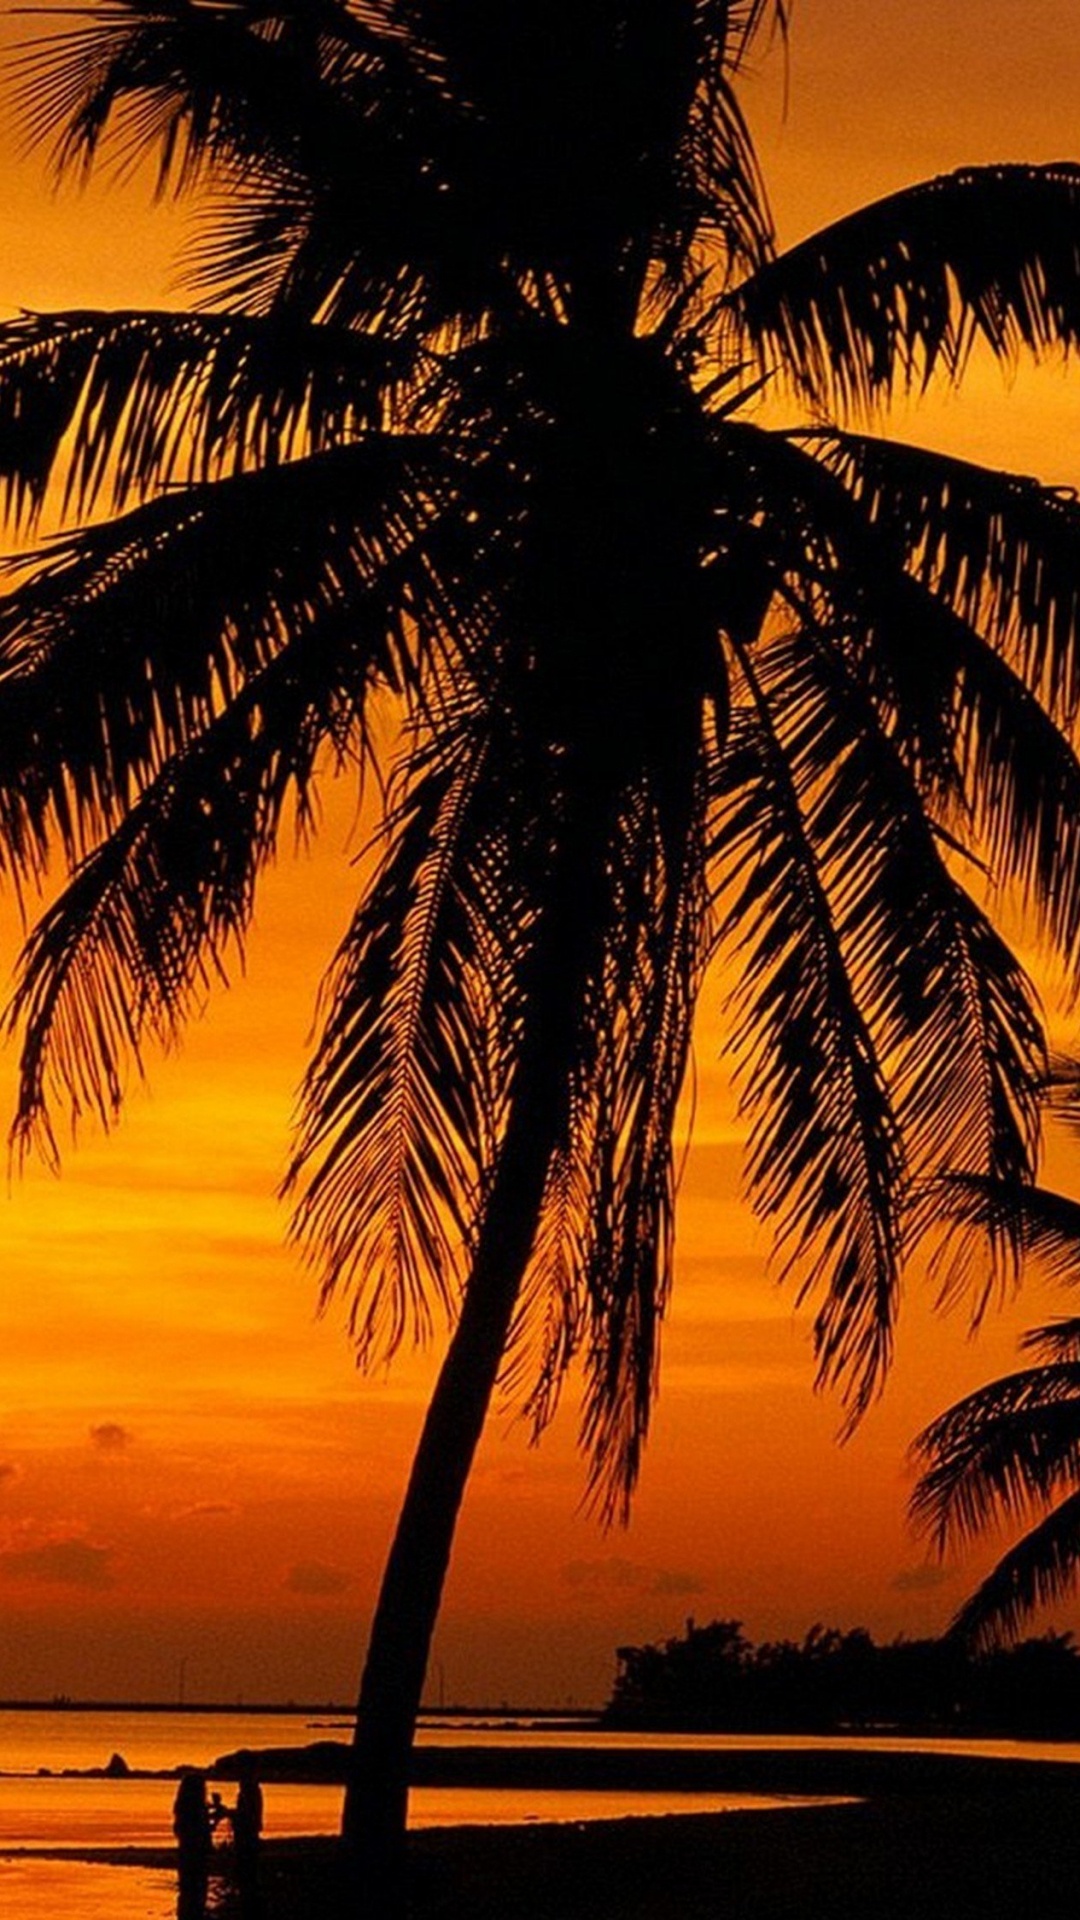 热带地区, 日落, 晚上, 早上, 加勒比 壁纸 1080x1920 允许